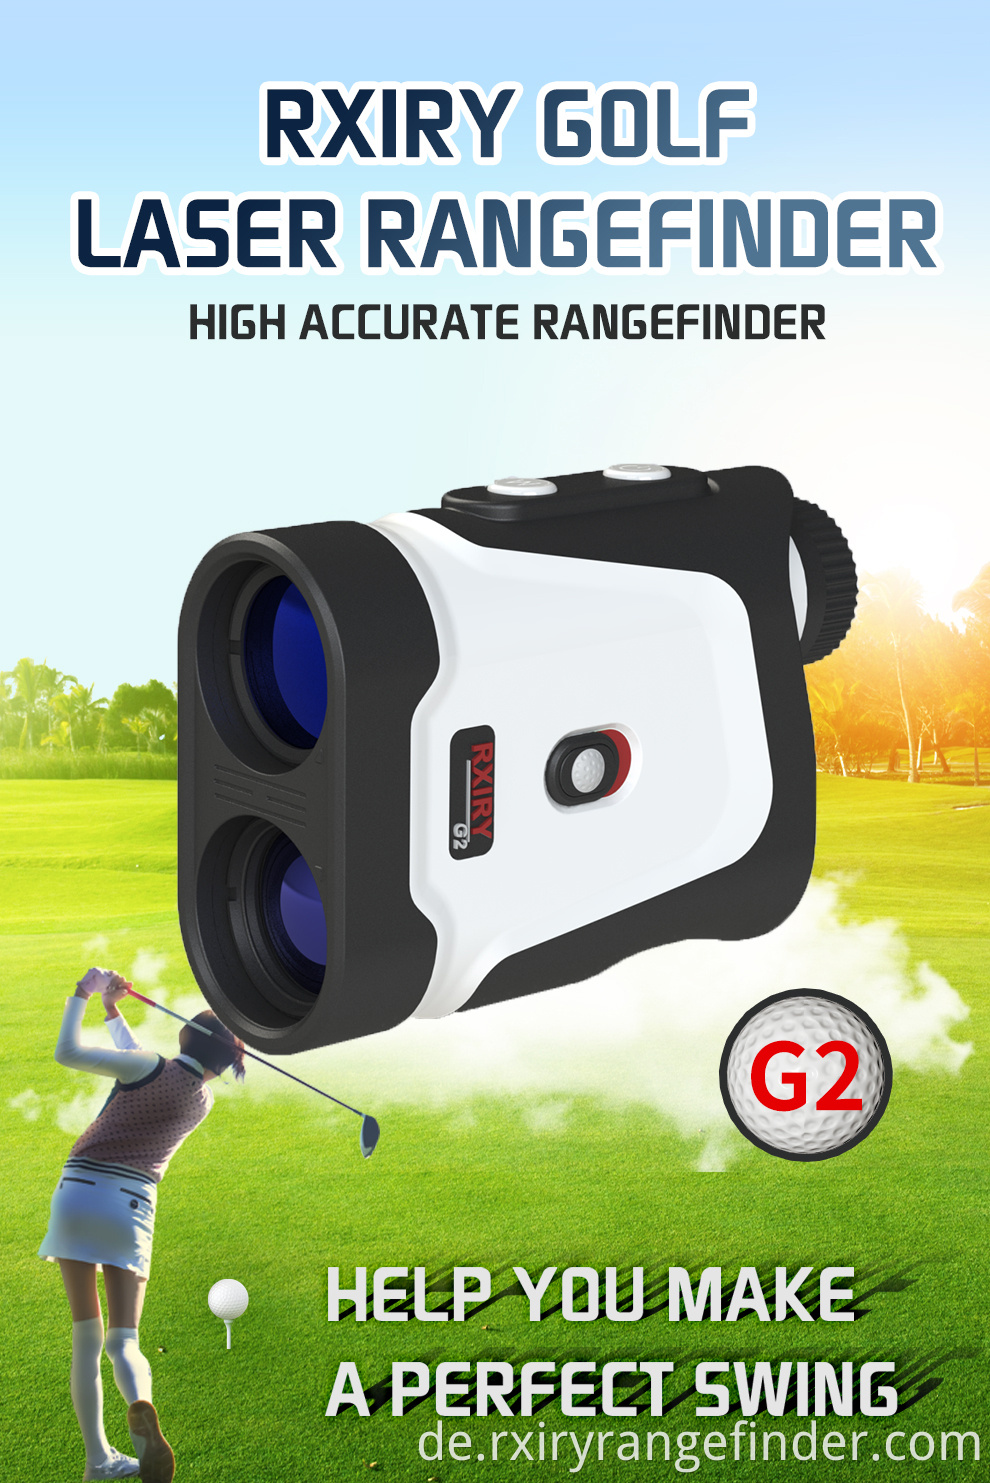 Golf rangefinder G2 (1)